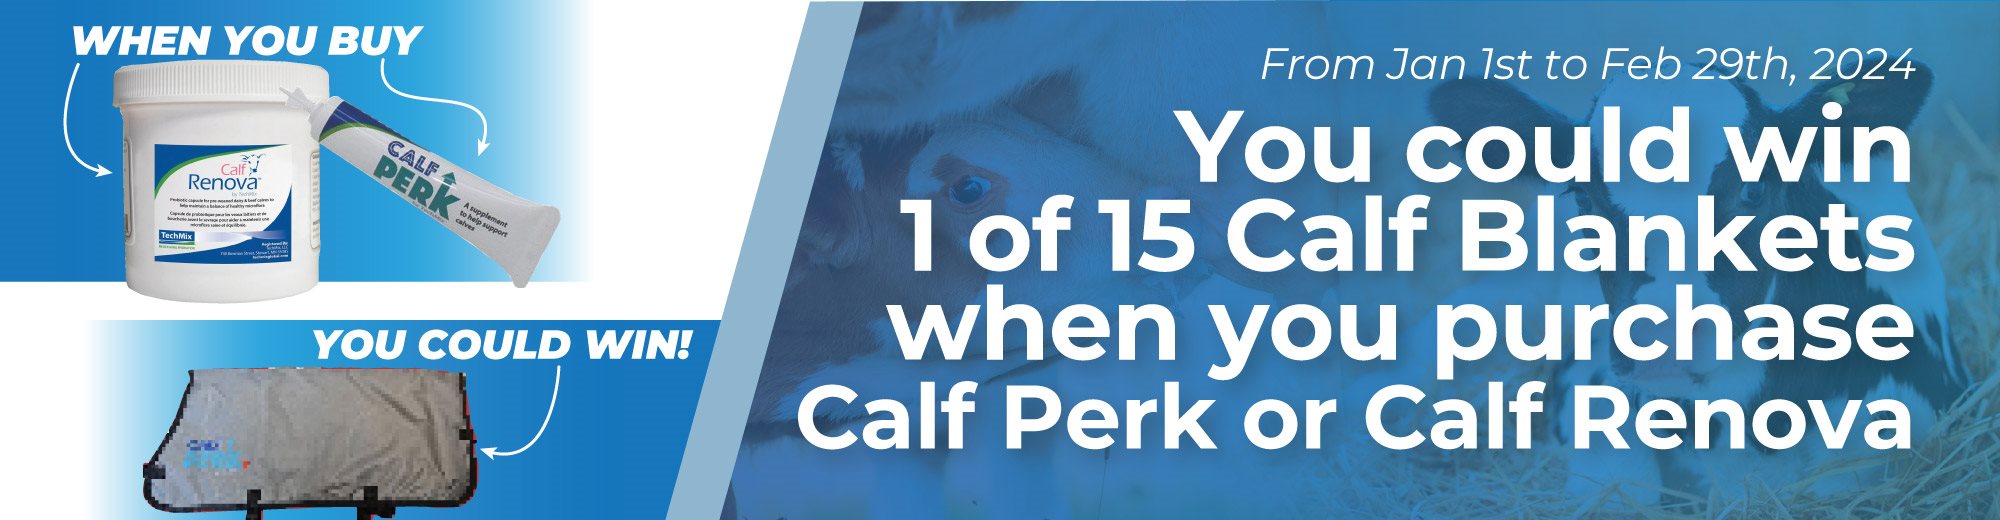 Calf Perk / Calf Renova Promo